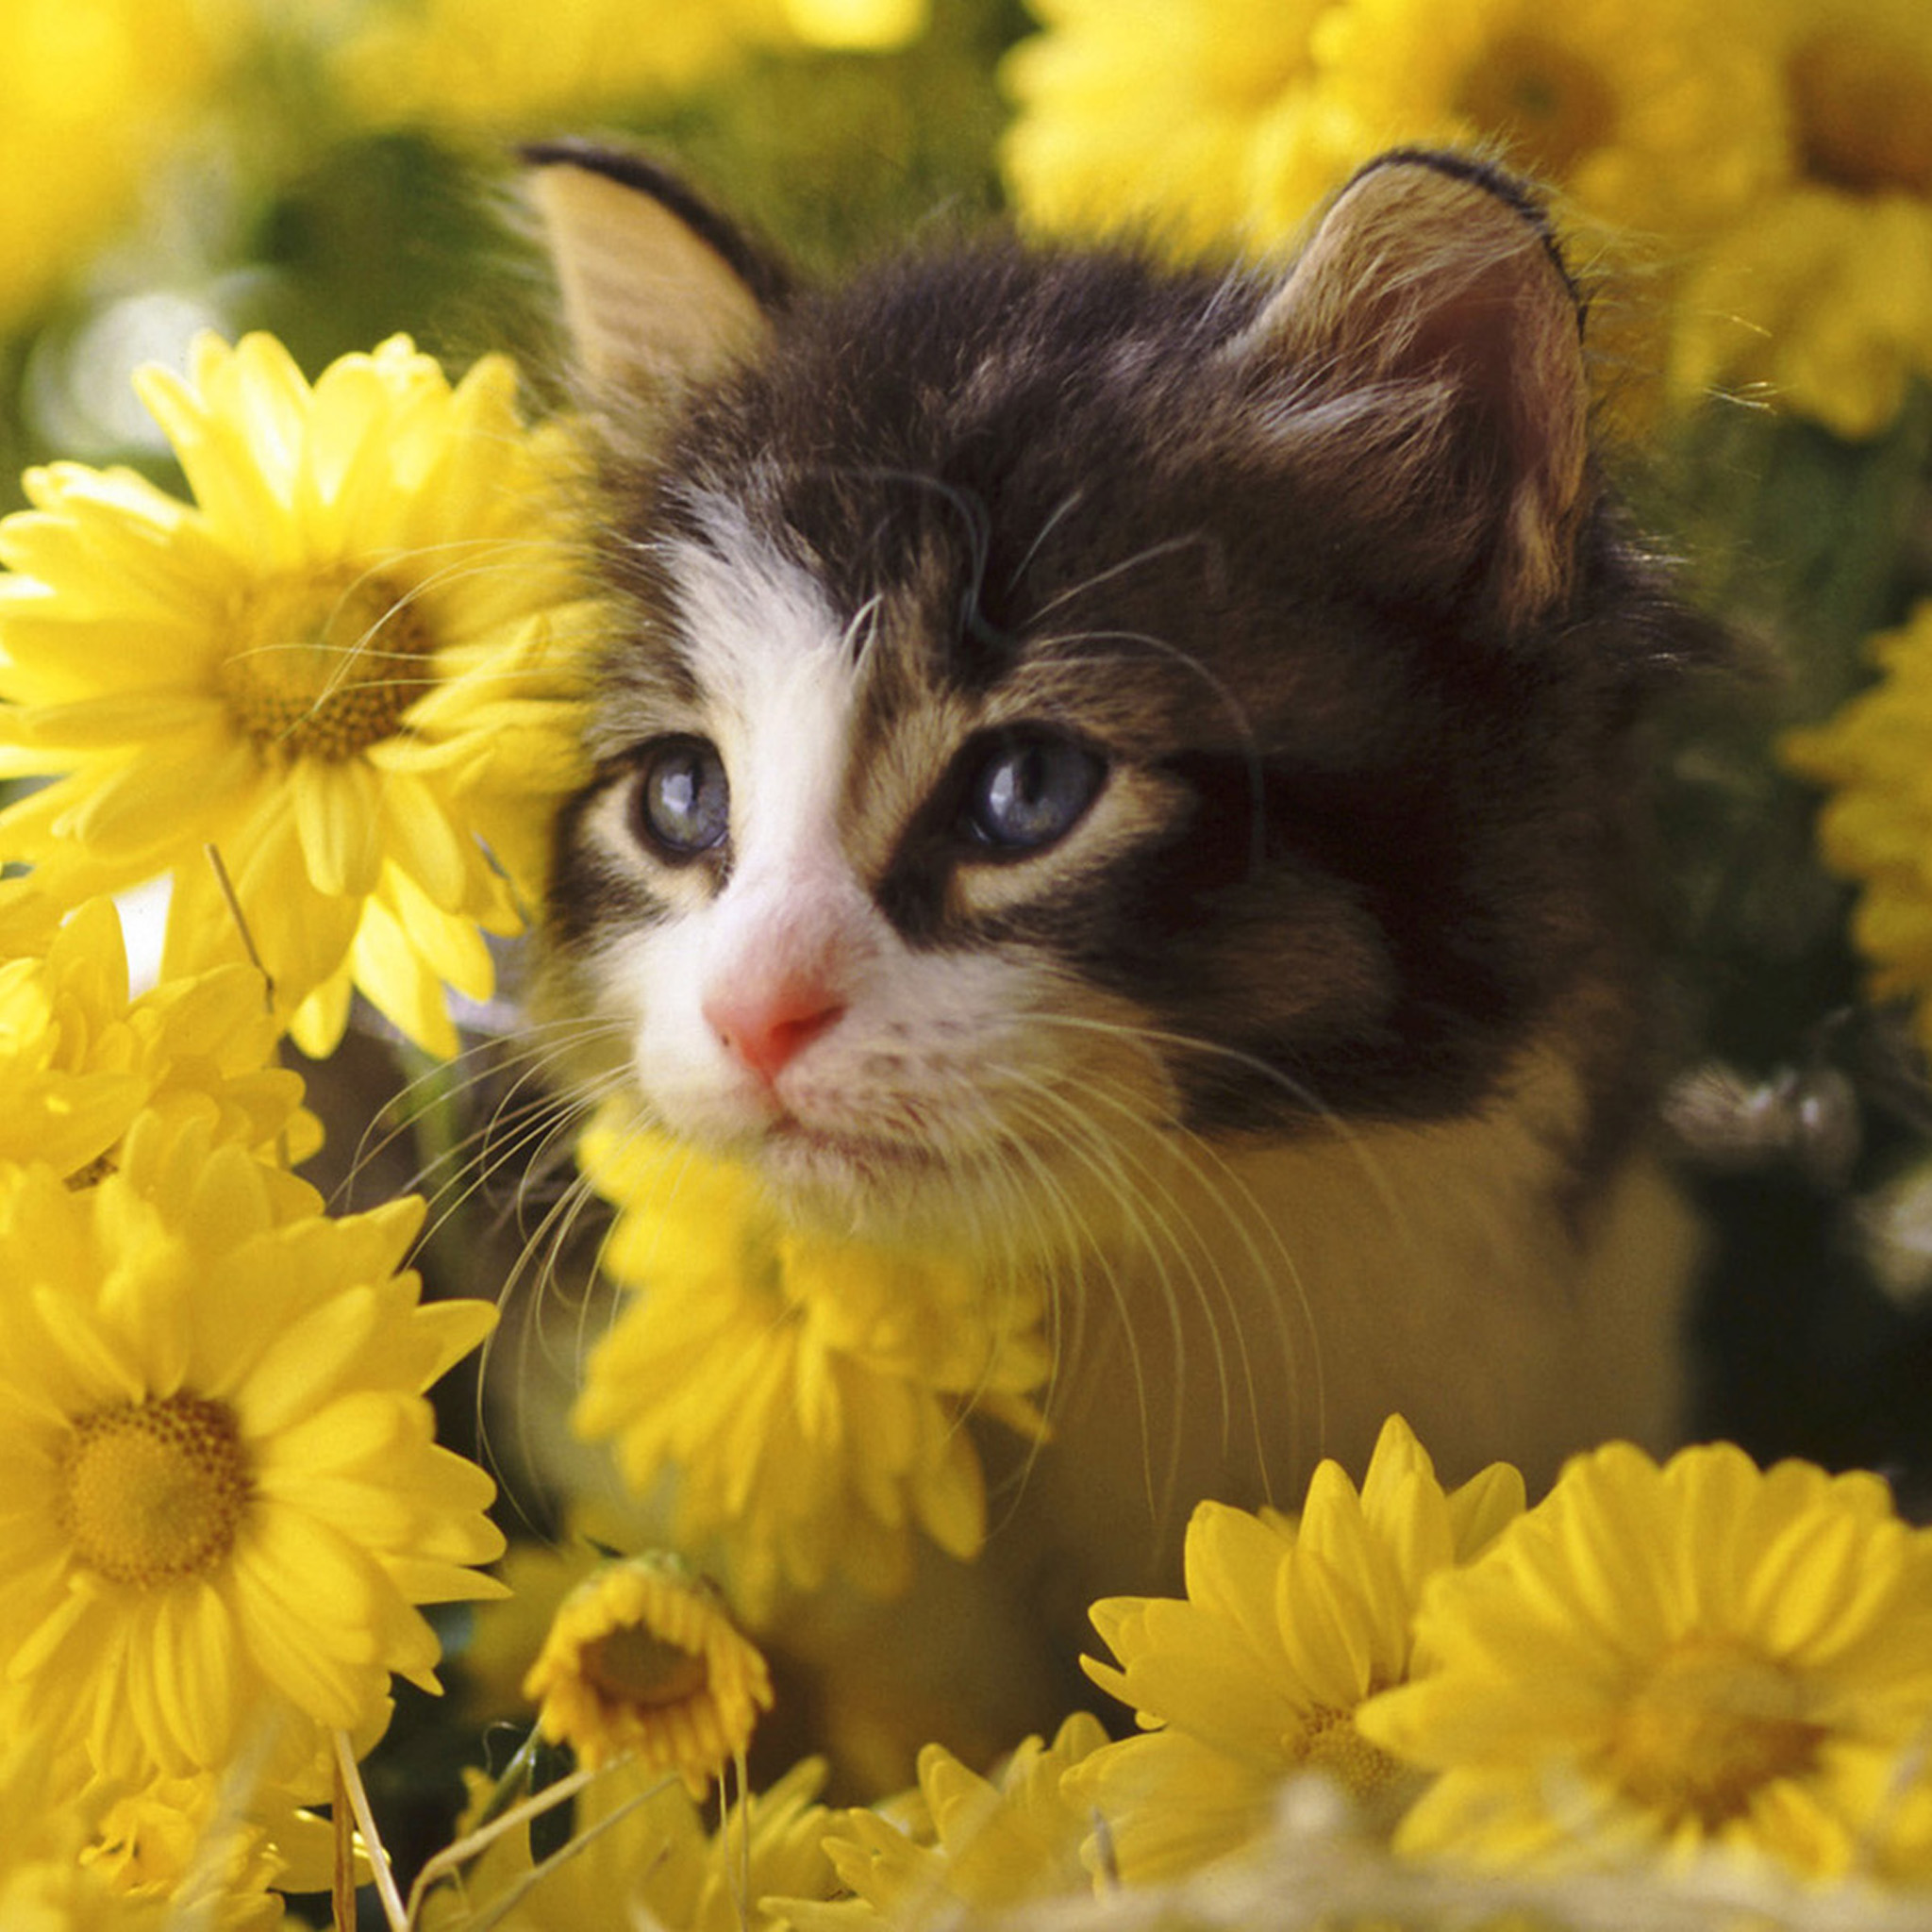 可愛いお花に囲まれた猫の壁紙 : 可愛い猫の壁紙画像集 - NAVER まとめ